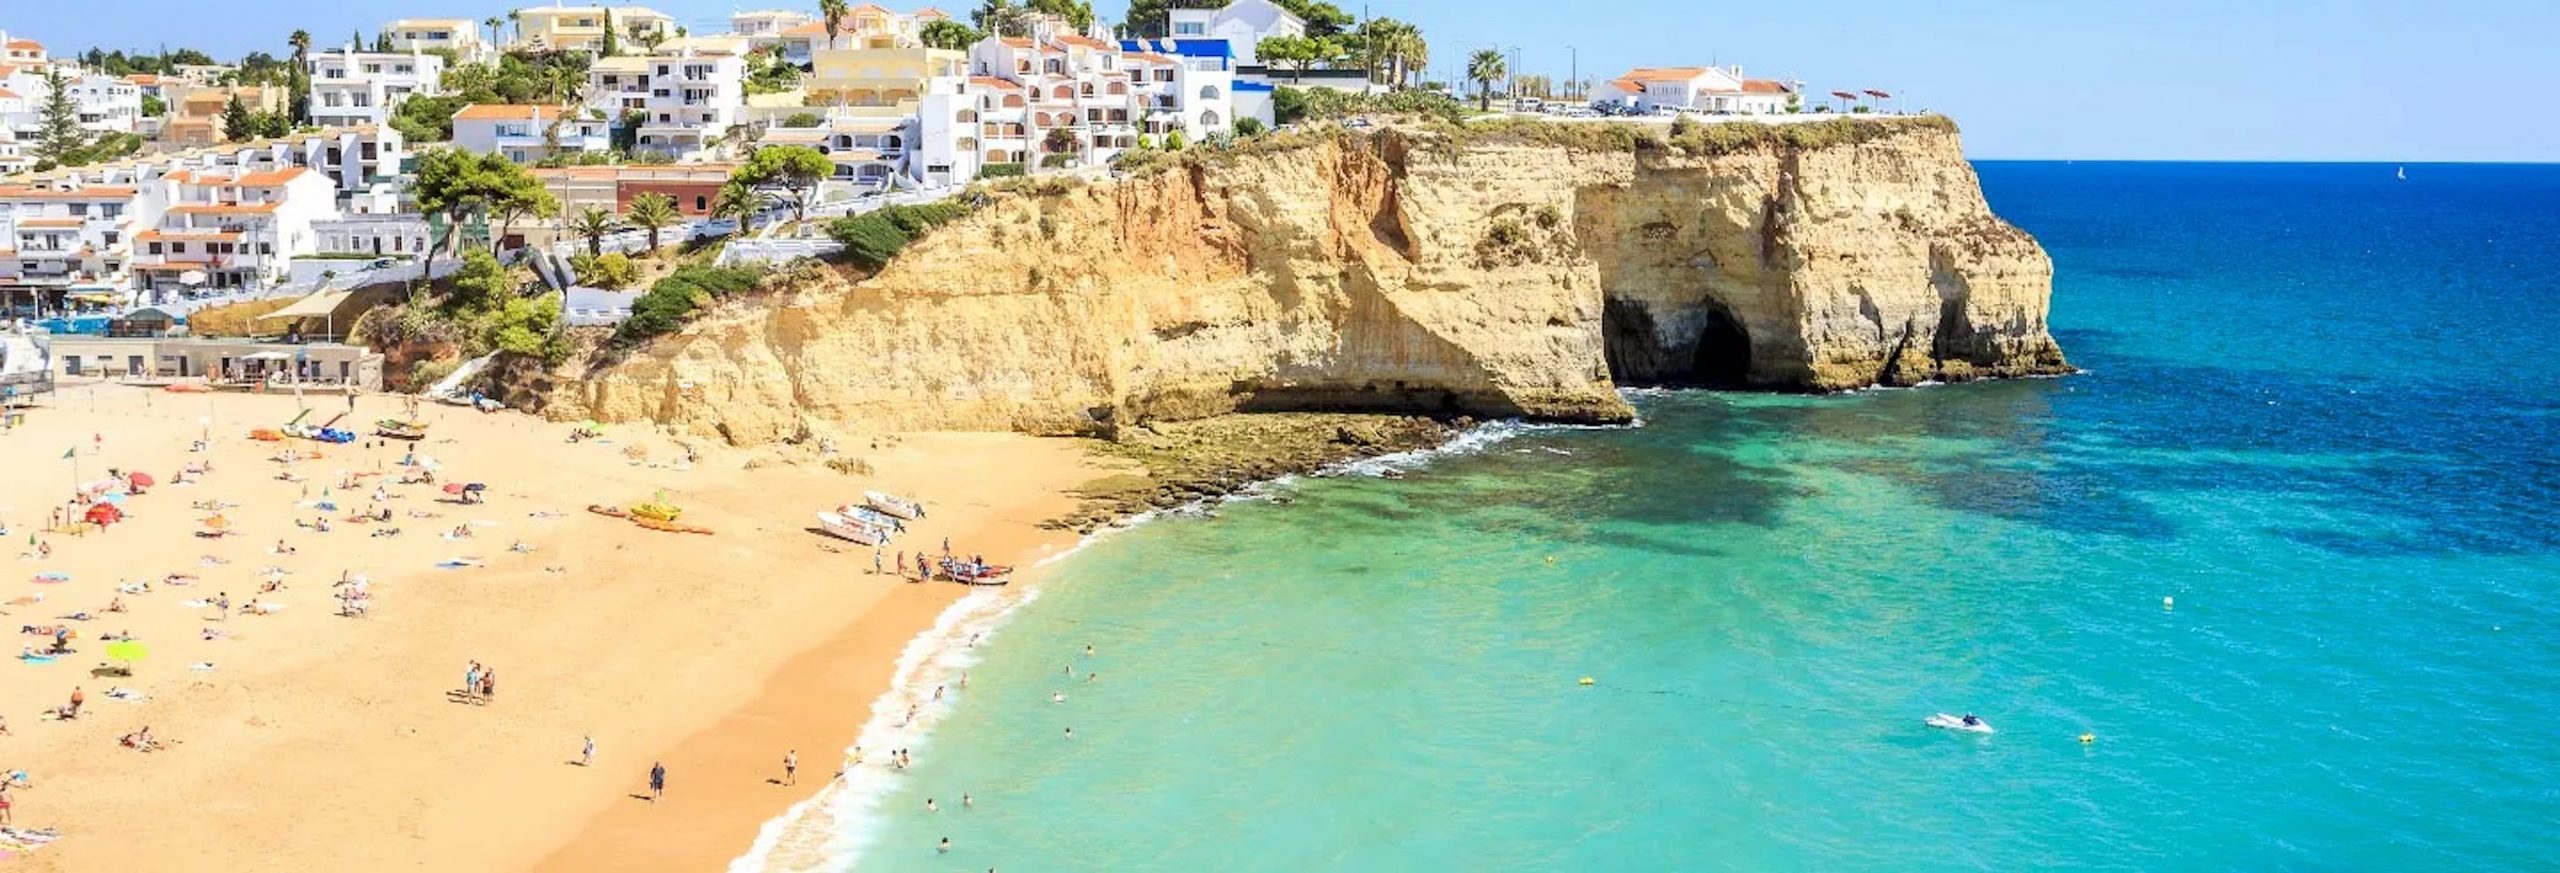 Weitere schöne Orte an der Algarve, um abseits des Massentourismus zu bleiben